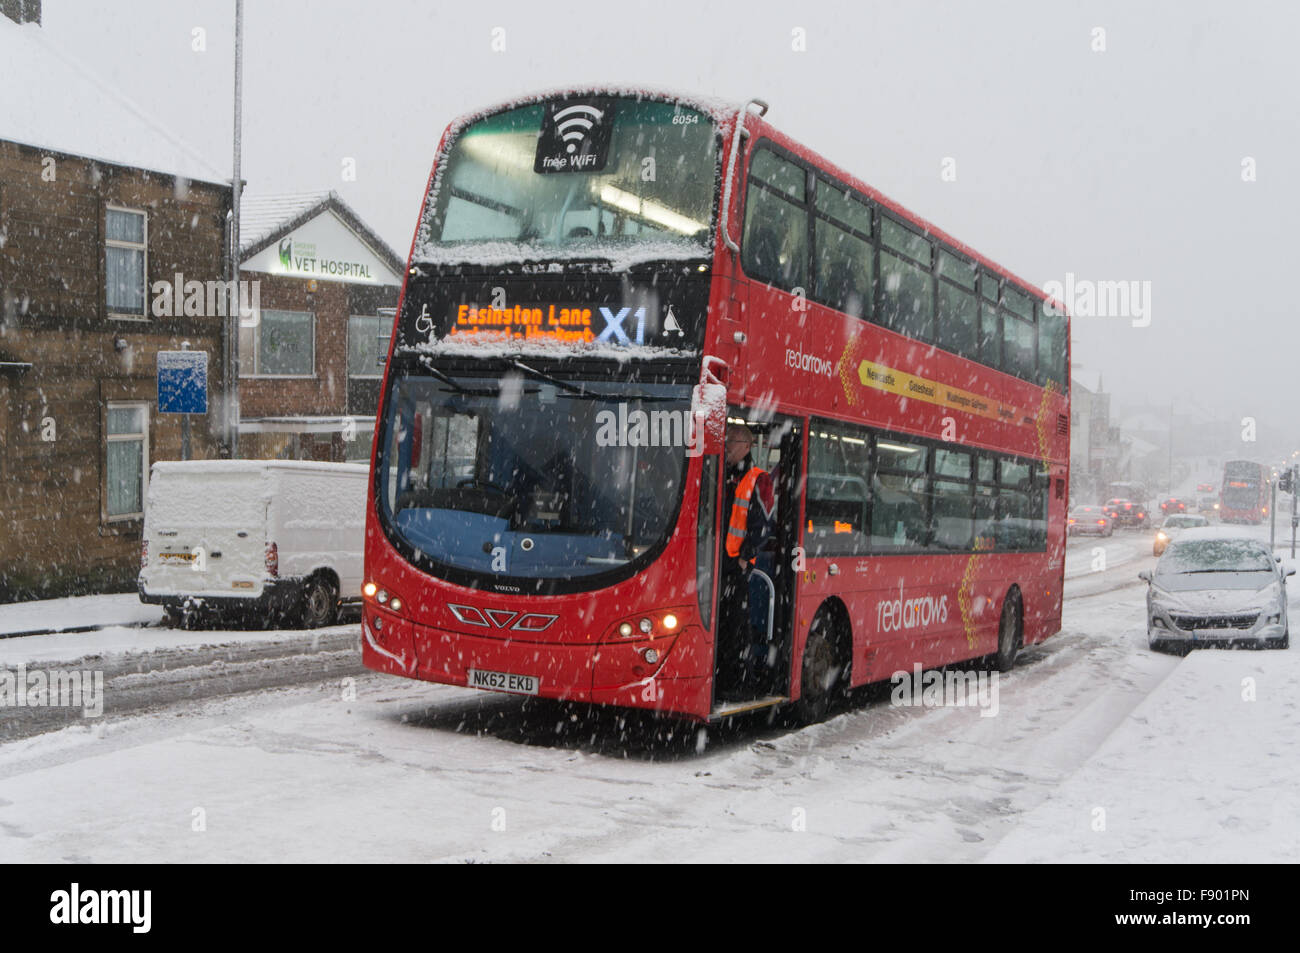 En Gateshead, Reino Unido 12 de diciembre de 2015. La nieve trajo el tráfico a una moratoria sobre la colina de Sheriff Gateshead. Aquí un bus X1 es incapaz de subir la colina con otros dos autobuses también atrapado detrás de crédito: Washington Imaging/Alamy Live News Foto de stock